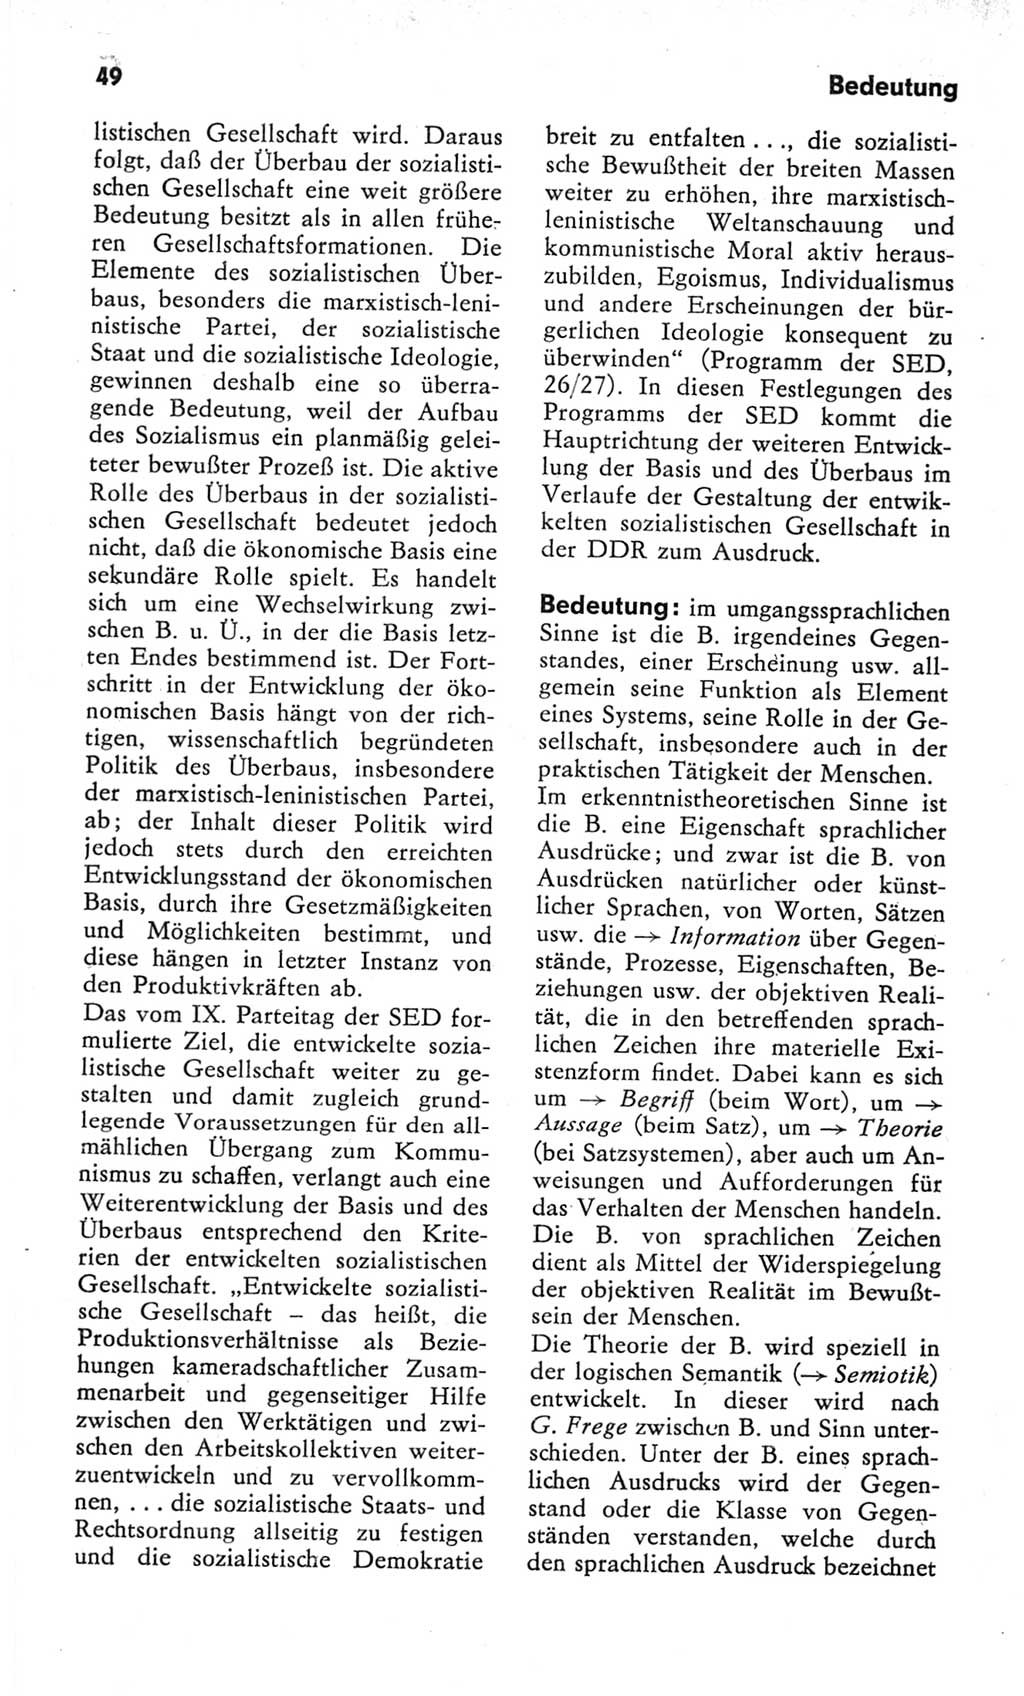 Kleines Wörterbuch der marxistisch-leninistischen Philosophie [Deutsche Demokratische Republik (DDR)] 1982, Seite 49 (Kl. Wb. ML Phil. DDR 1982, S. 49)